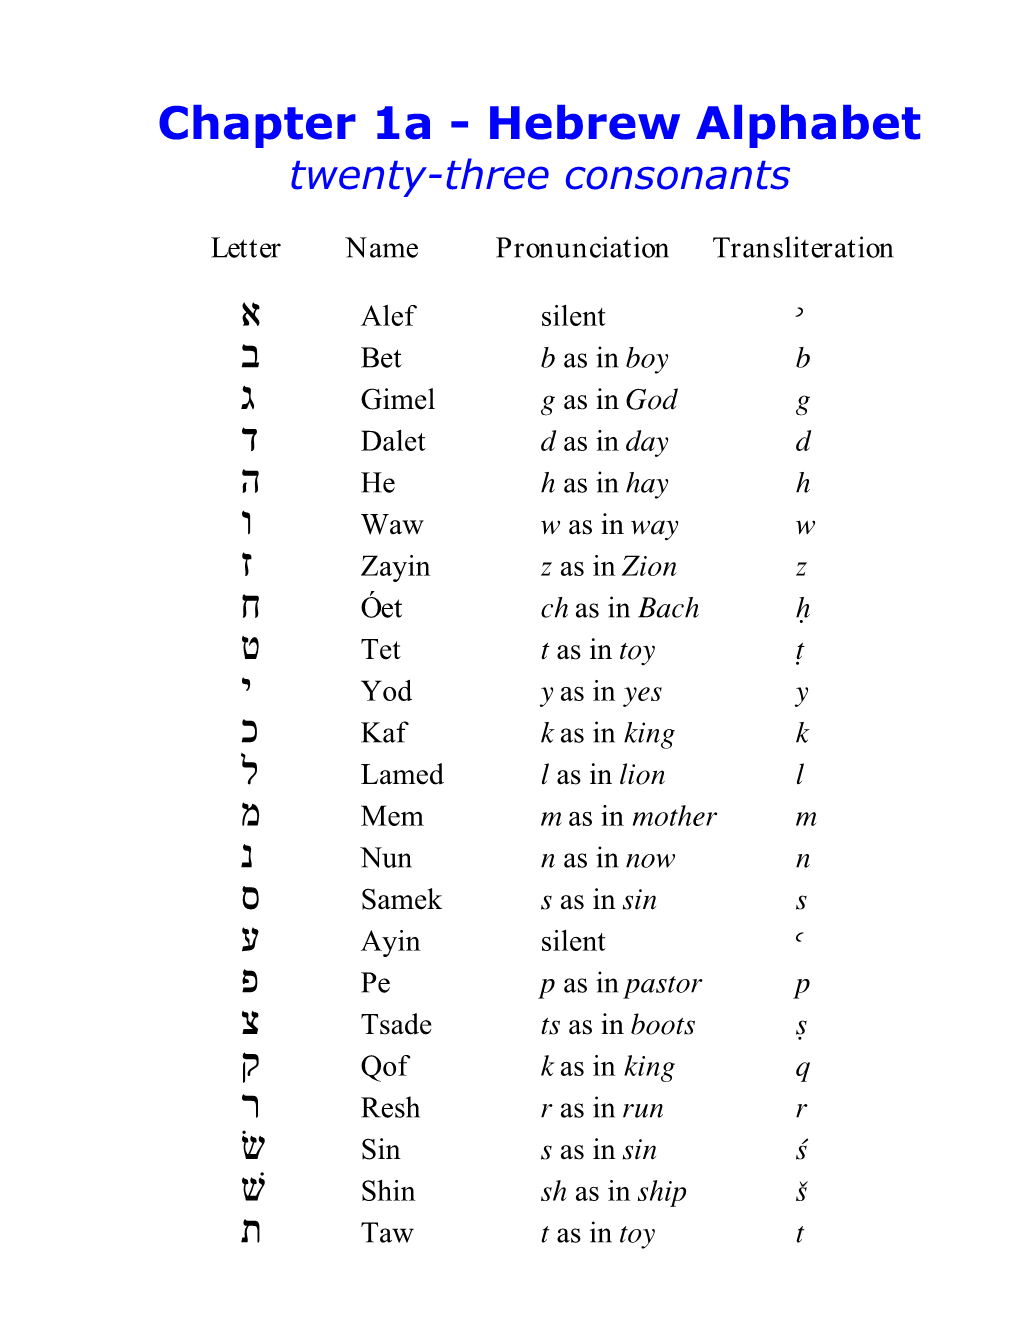 Hebrew Alphabet Six Begadkephat Consonants